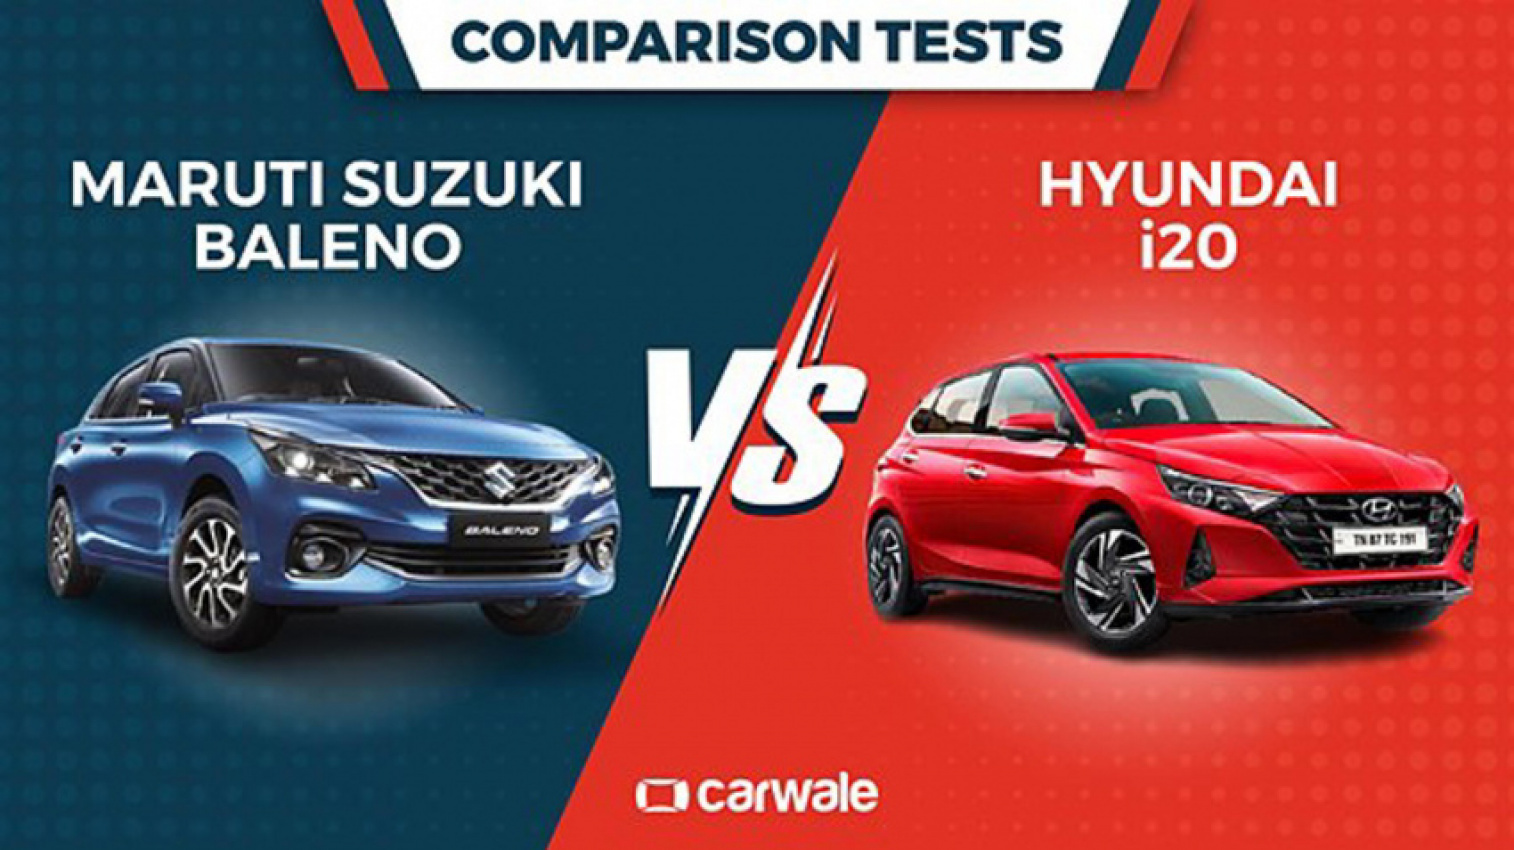 autos, cars, hyundai, suzuki, hyundai i20, spec comparison – maruti suzuki baleno vs hyundai i20